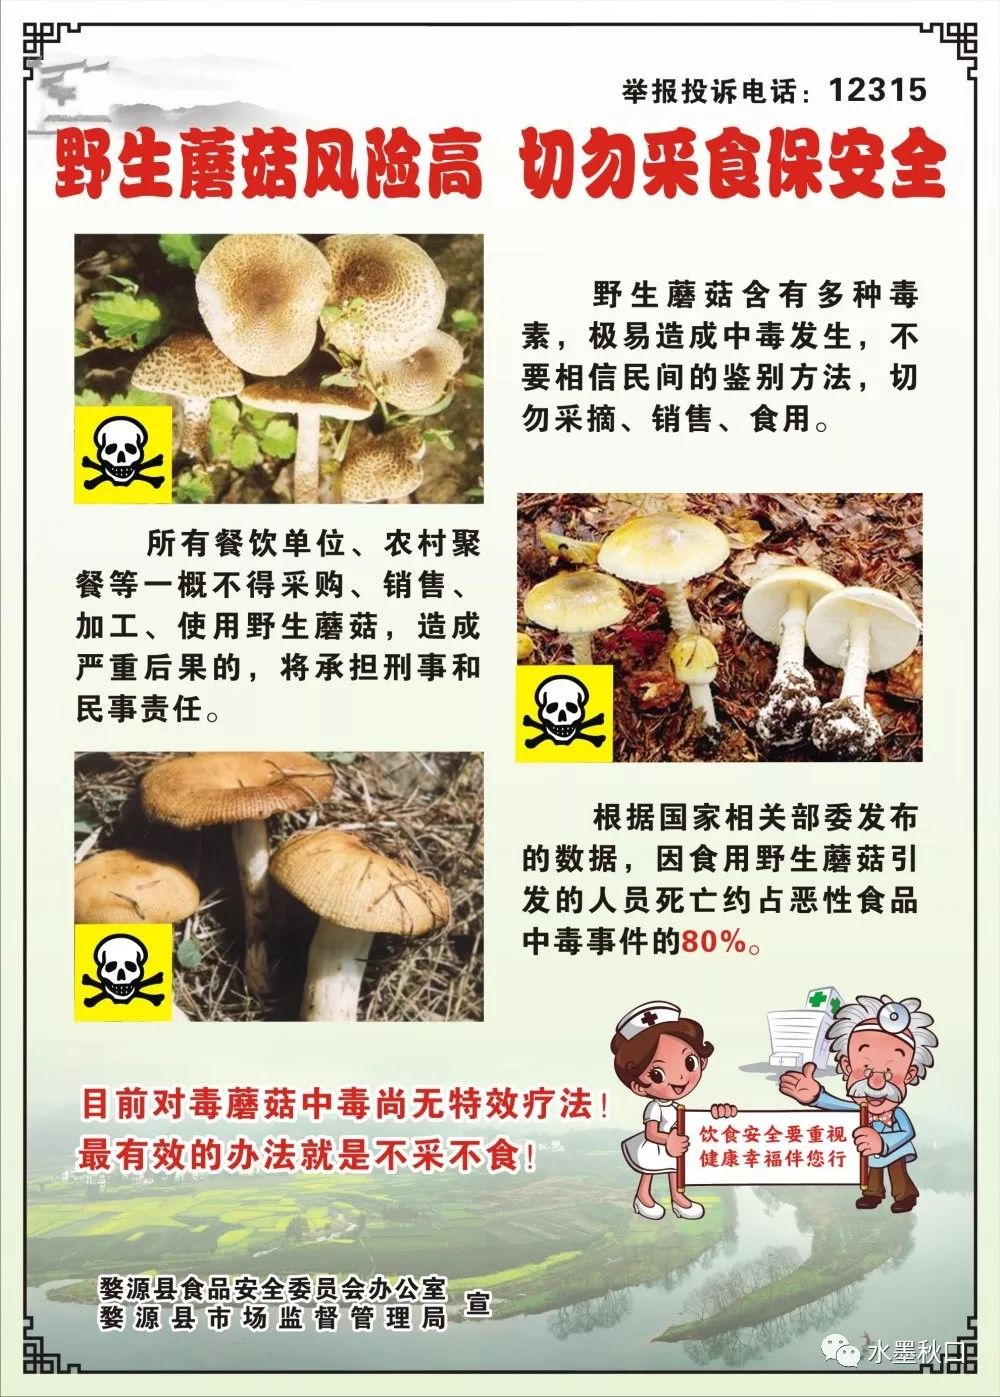 【食品安全动态】秋口镇召开防控野生蘑菇中毒工作会议_宣传